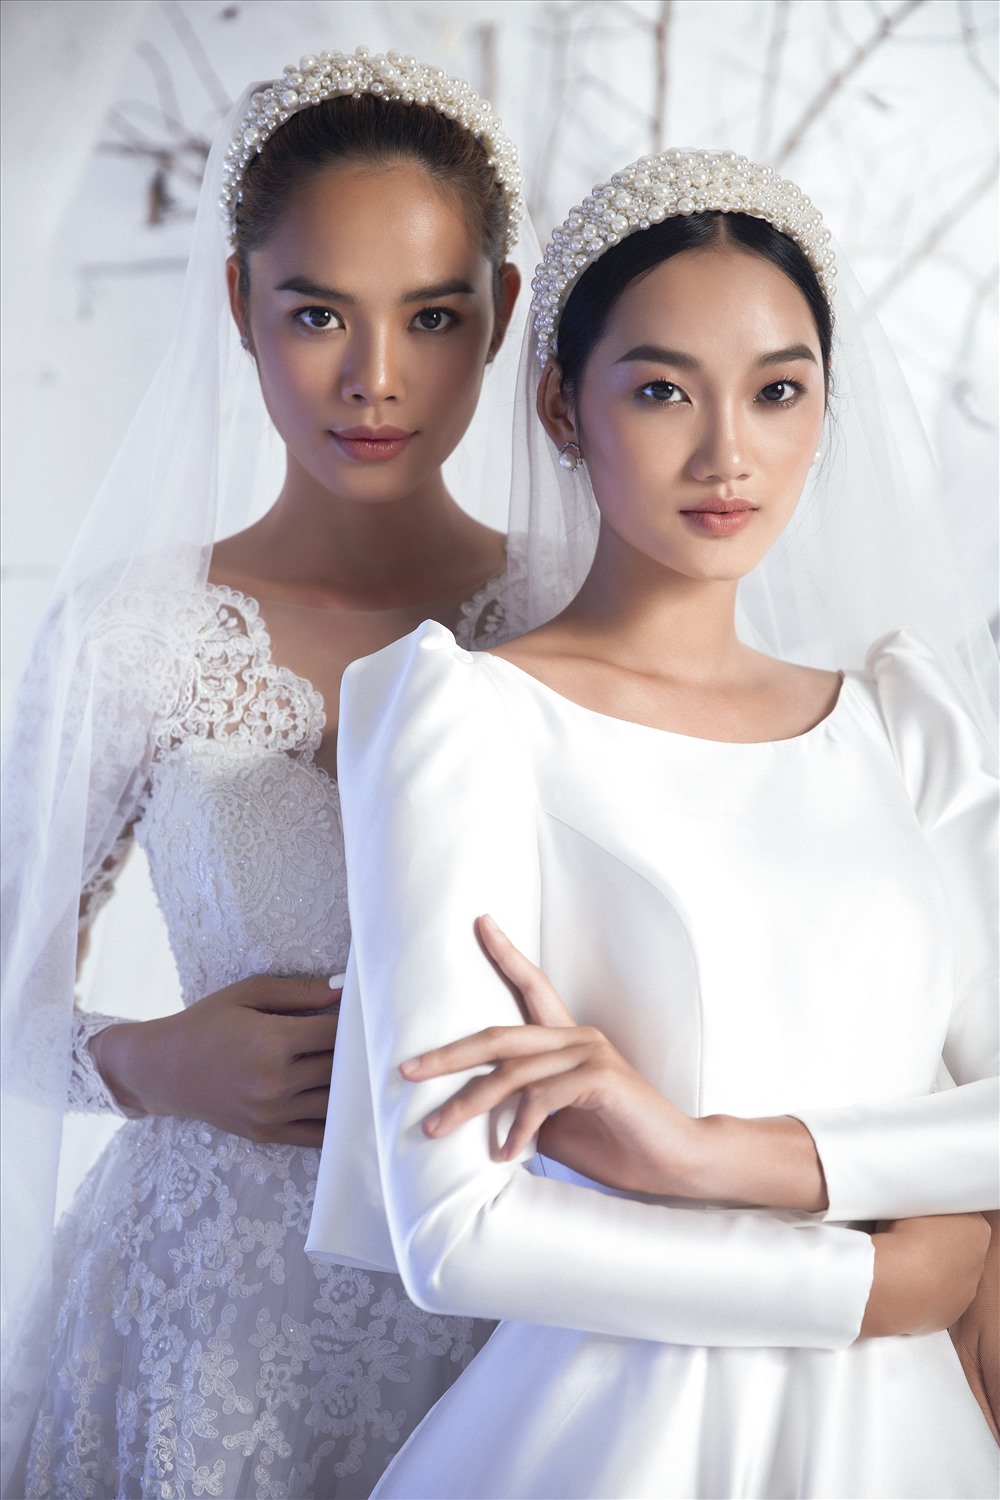 Hai siêui mẫu với hai phong cách trở thành nàng thơ trong bộ sưu tập váy cưới mới nhất của nhà thiết kế Vĩnh Thuỵ. Ảnh: Lê Thiện Viễn.